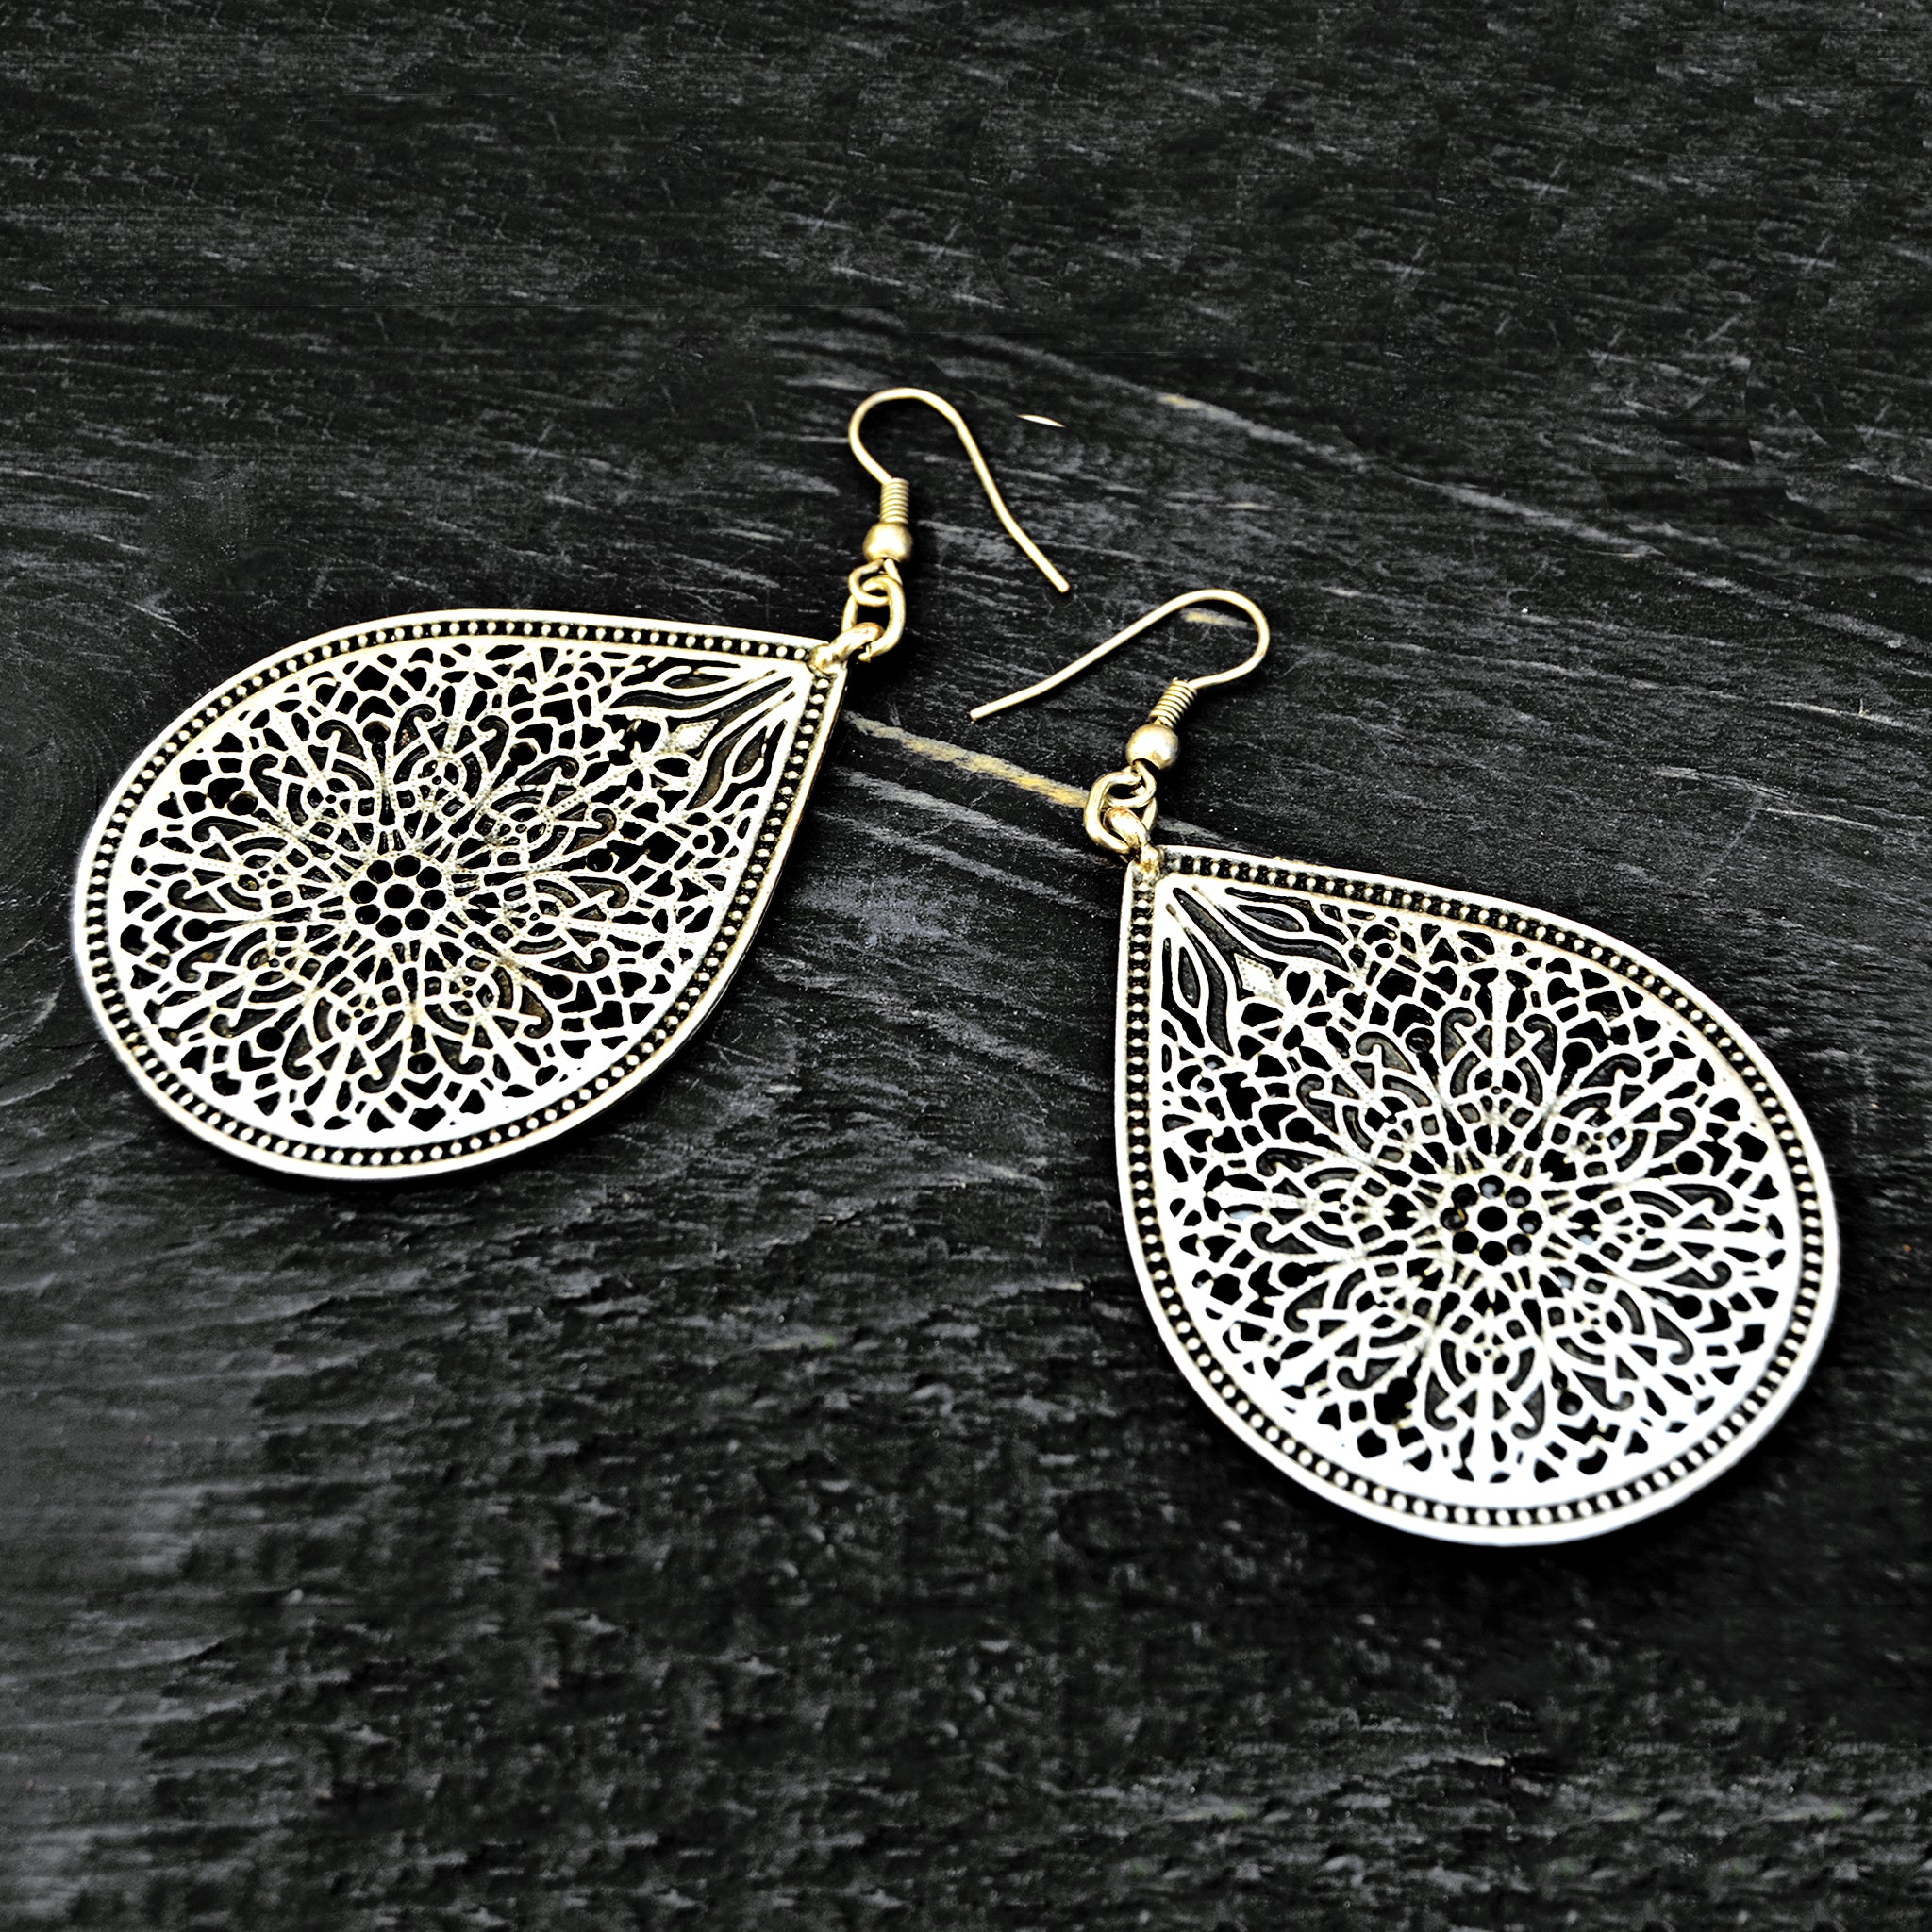 Turkish filigree earrings